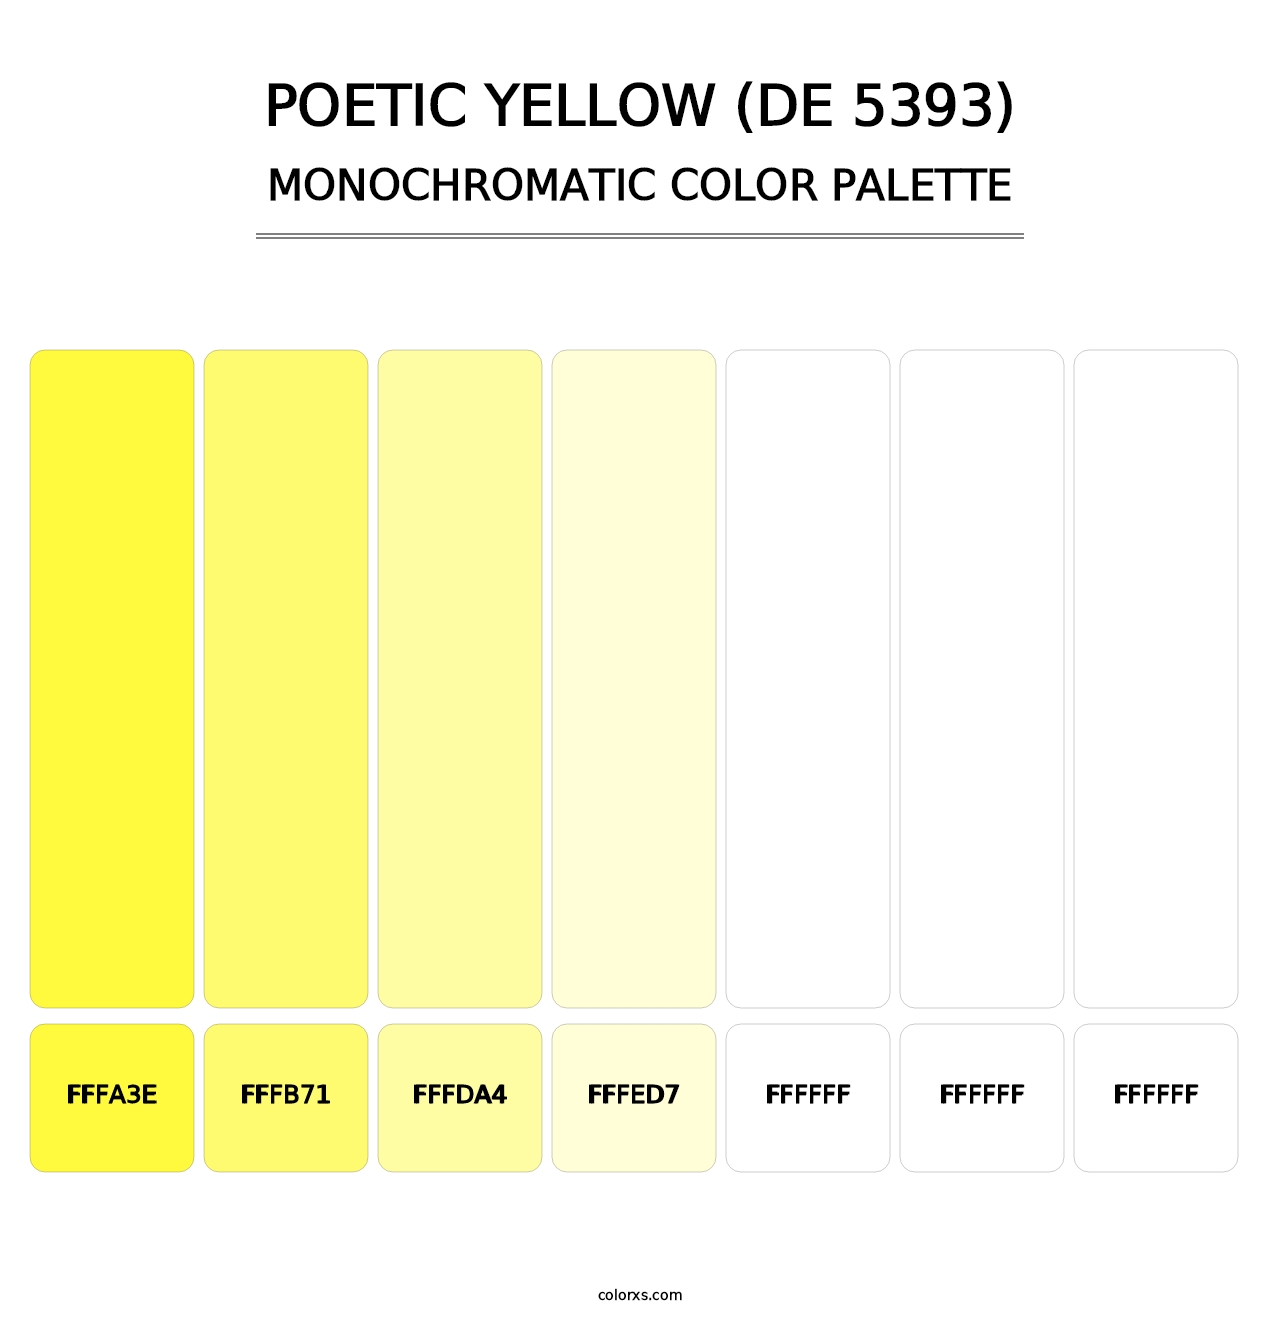 Poetic Yellow (DE 5393) - Monochromatic Color Palette